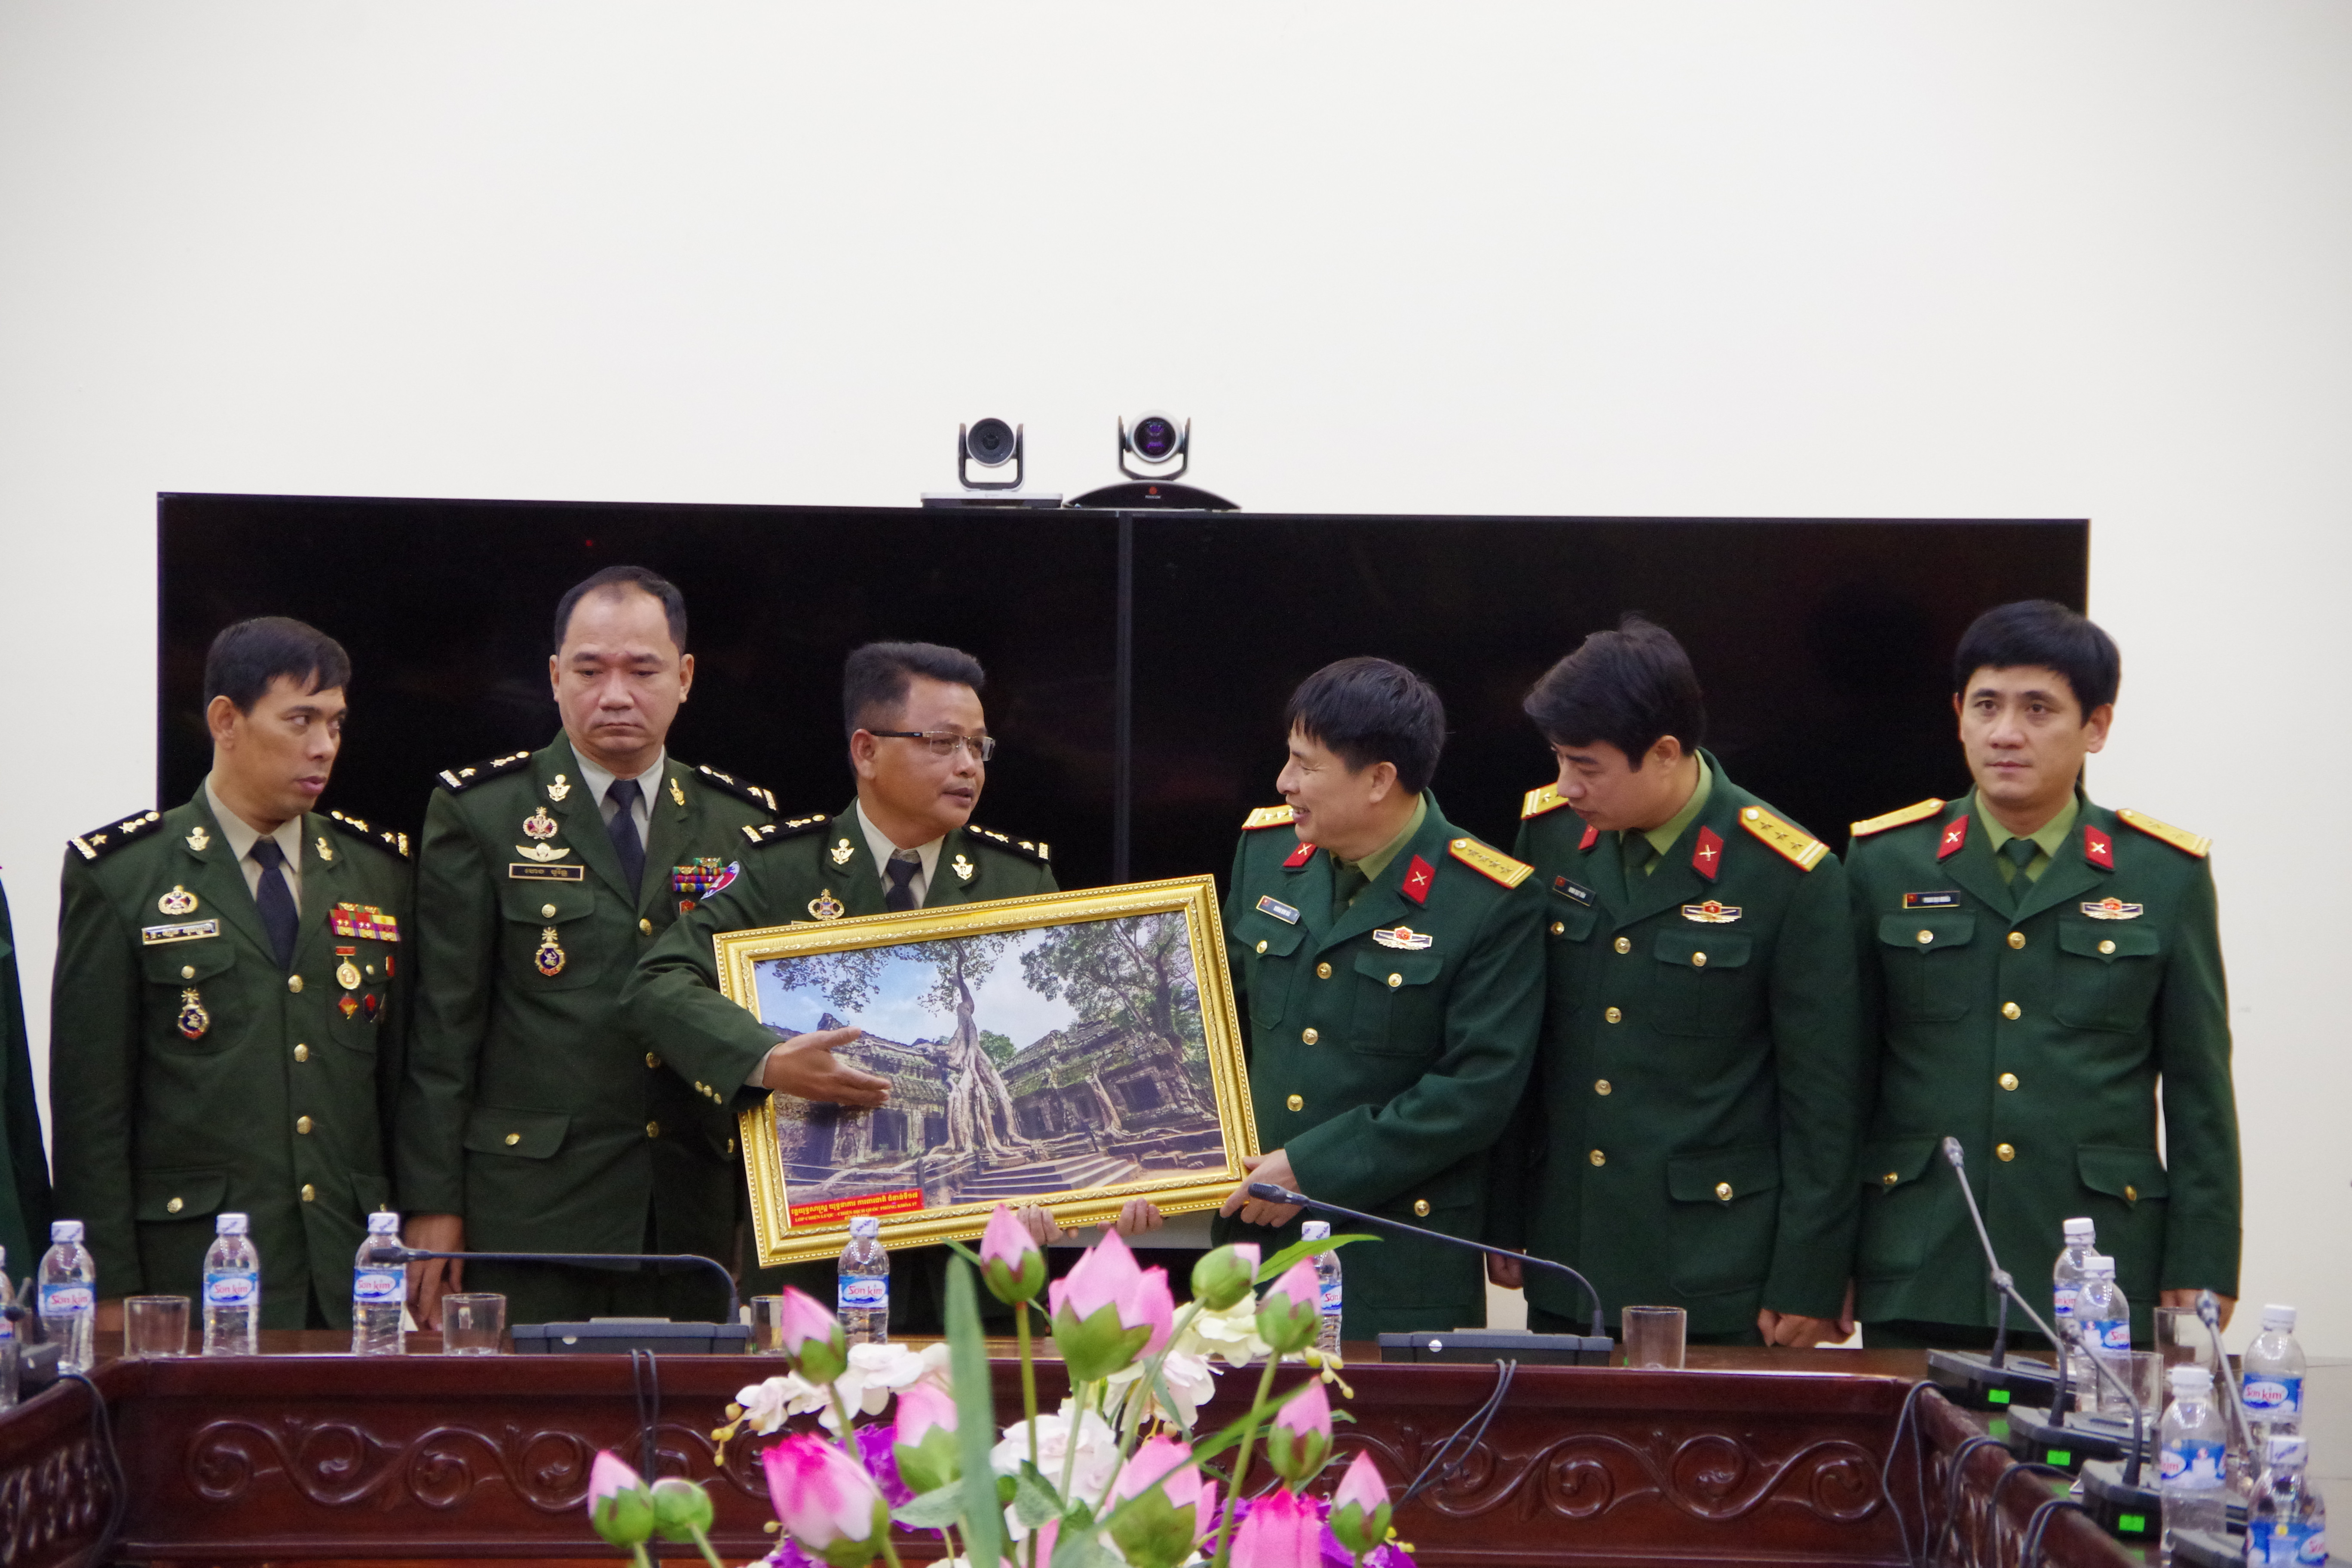 Thiếu Tướng Chan vuthy thay mặt học viên lớp học trao quà cho Bộ CHQS Tỉnh. Ảnh: Hoàng Anh